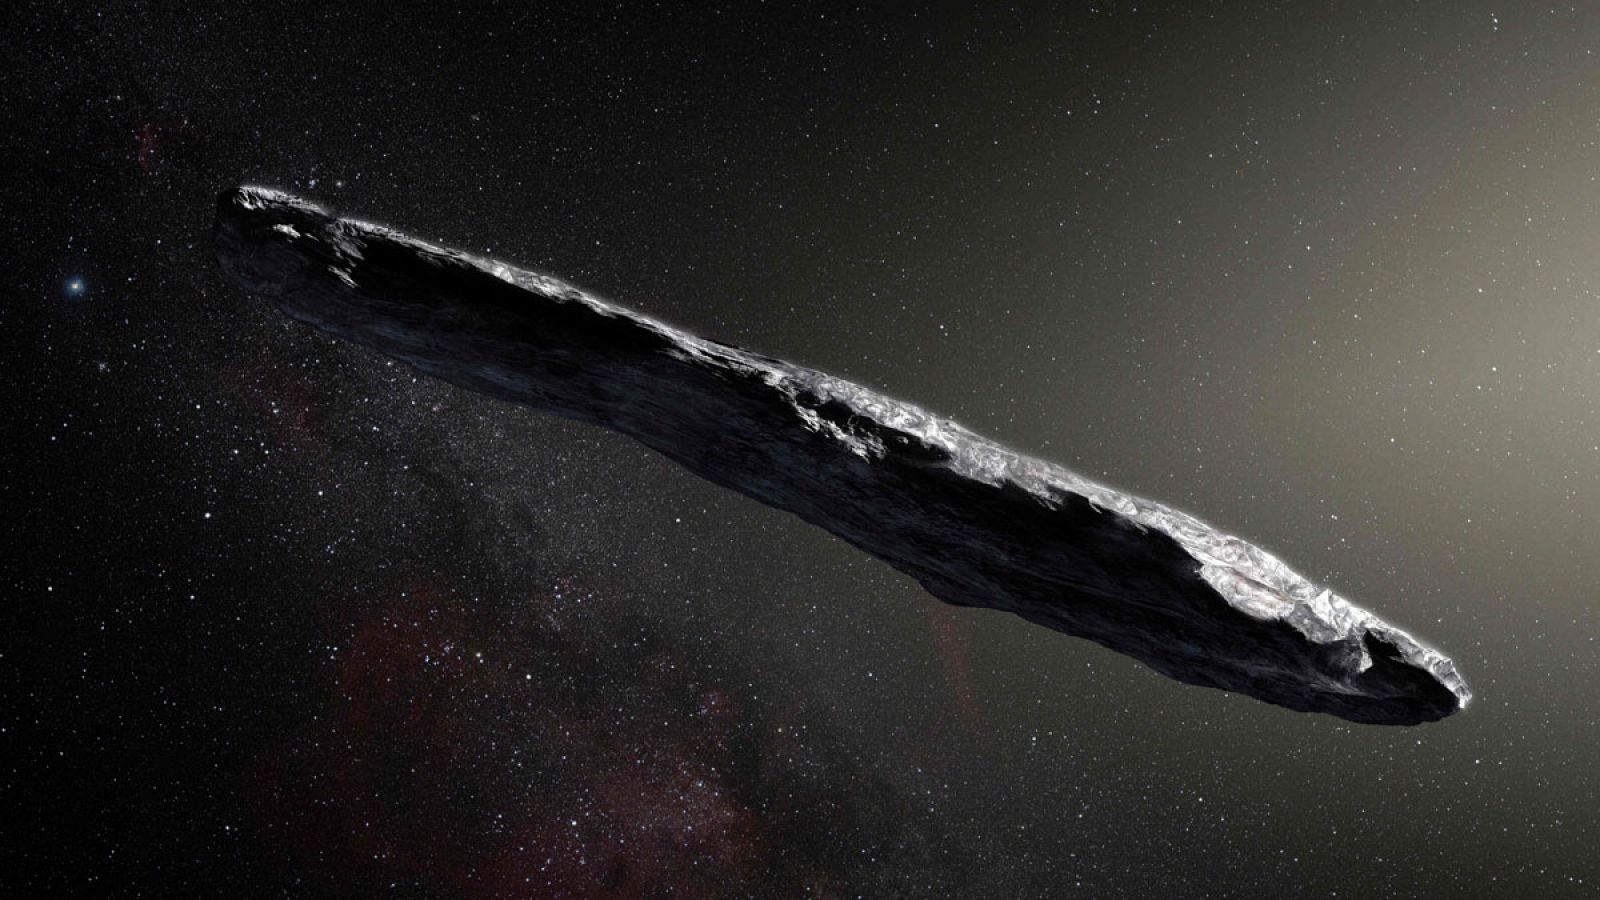 Astrónomos estadounidenses creen que Oumuamua podría estar diseñado para el viaje de reconocimiento interestelar por una civilización avanzada, pero cuya misión haya terminado.